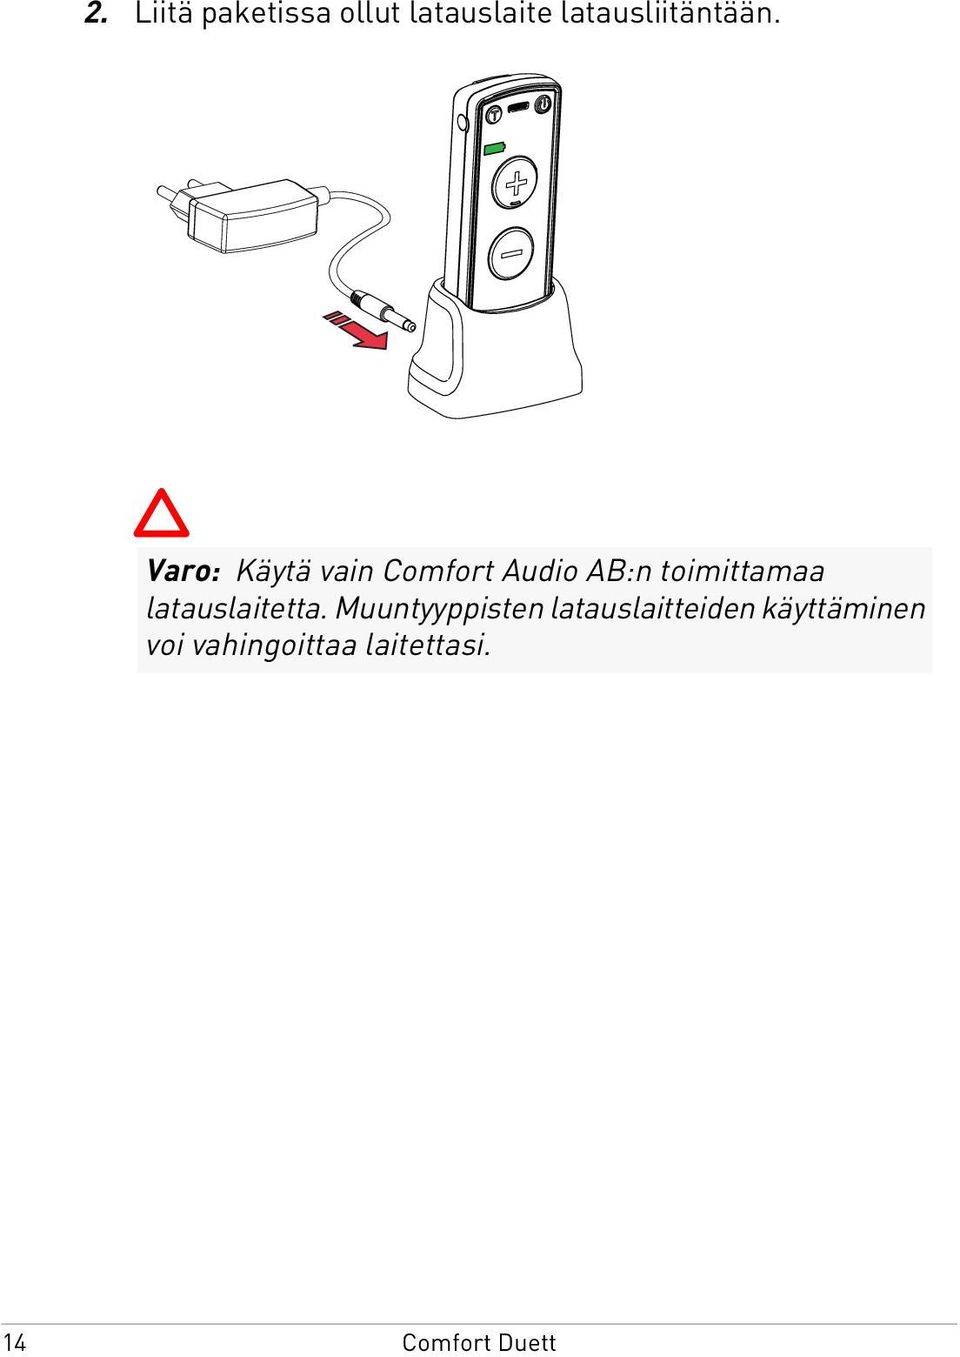 Varo: Käytä vain Comfort Audio AB:n toimittamaa